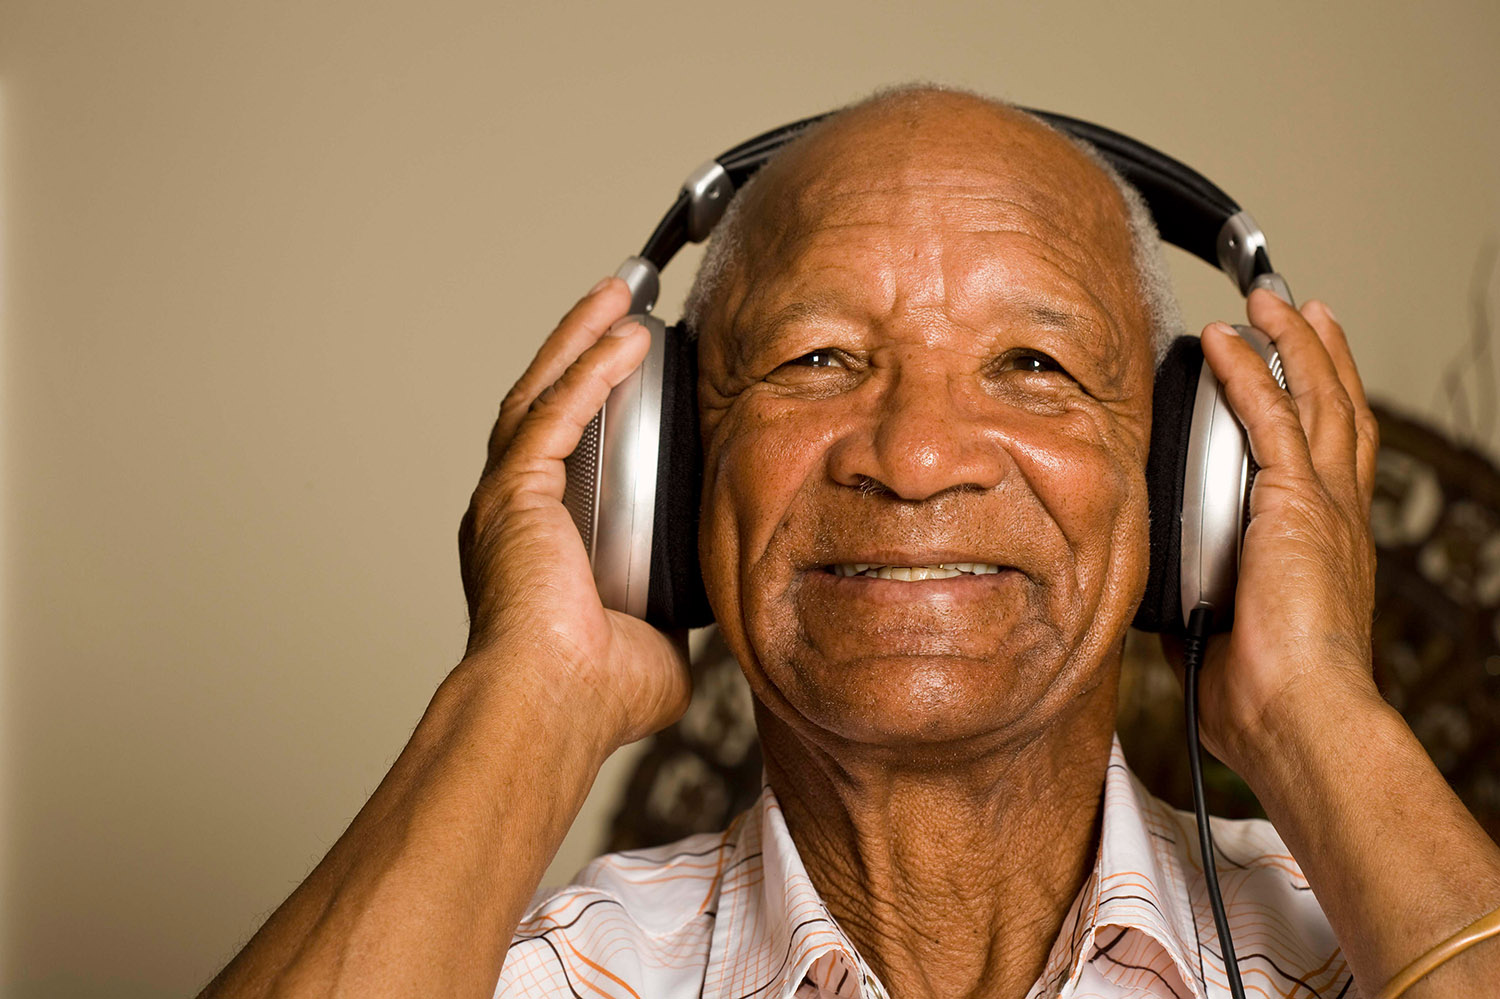 Black man smiling listening to music.